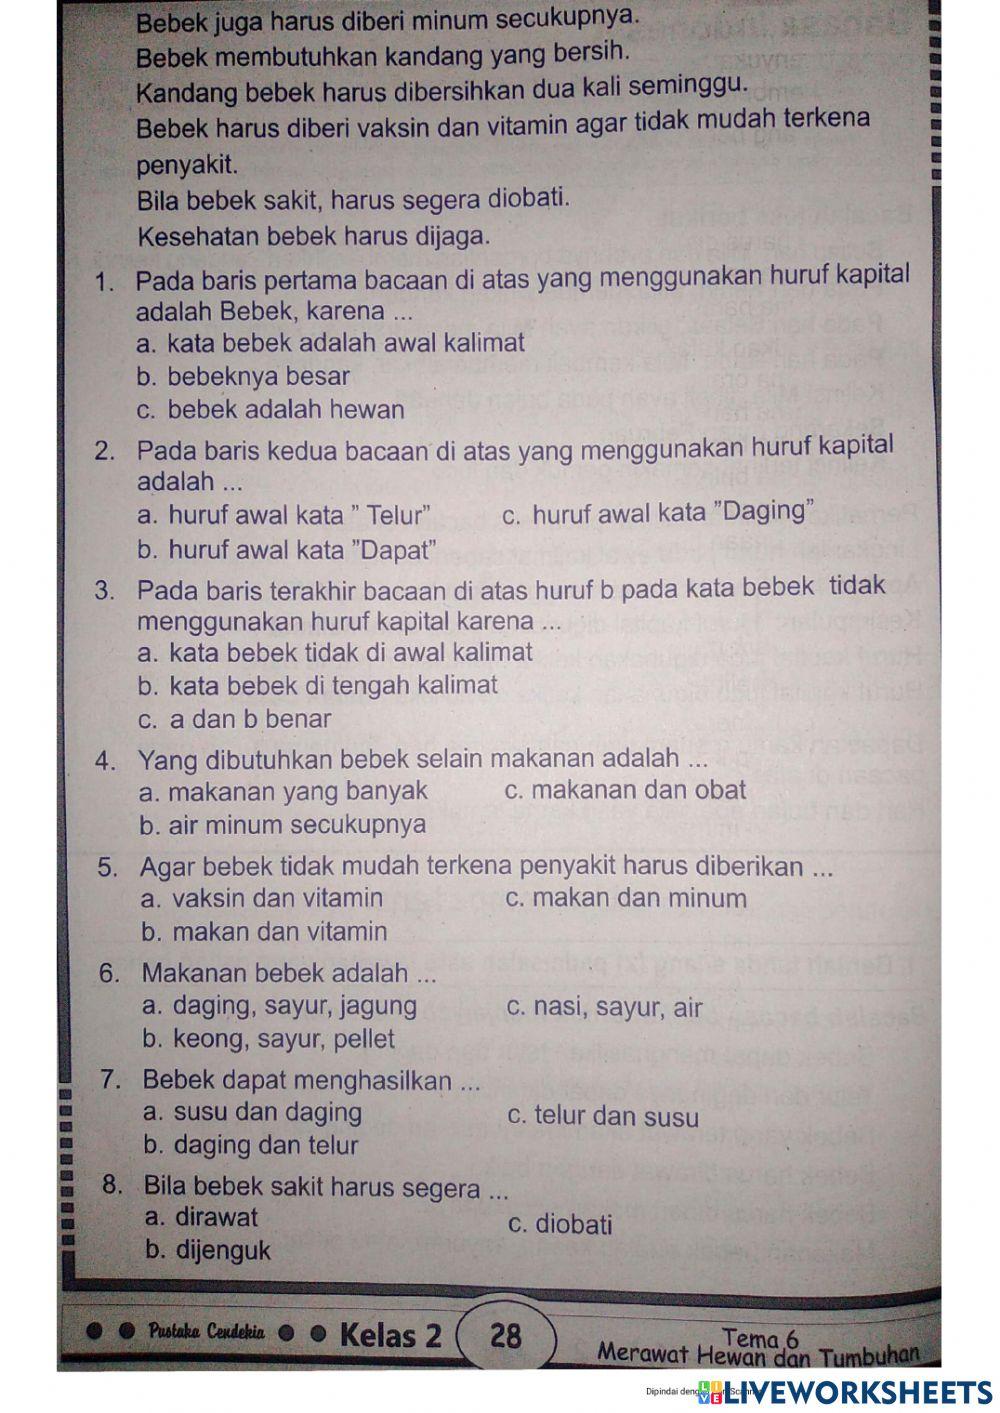 Tema 6  bahasa indo sub tema 2